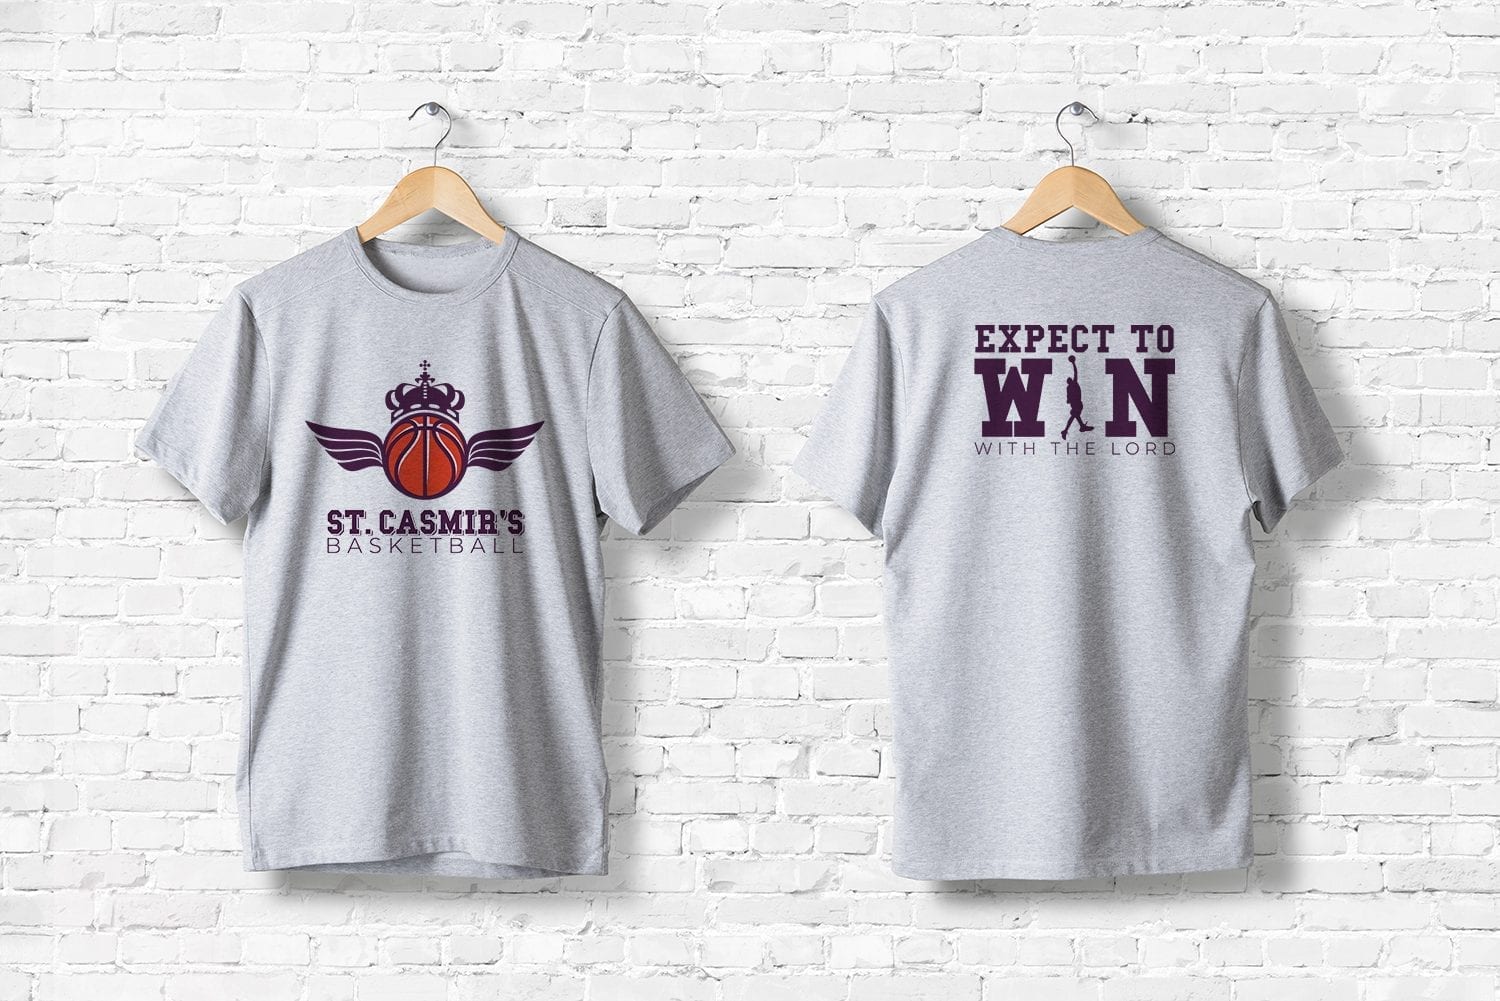 church graphic design ideas #5 - t-shirt for church rec league